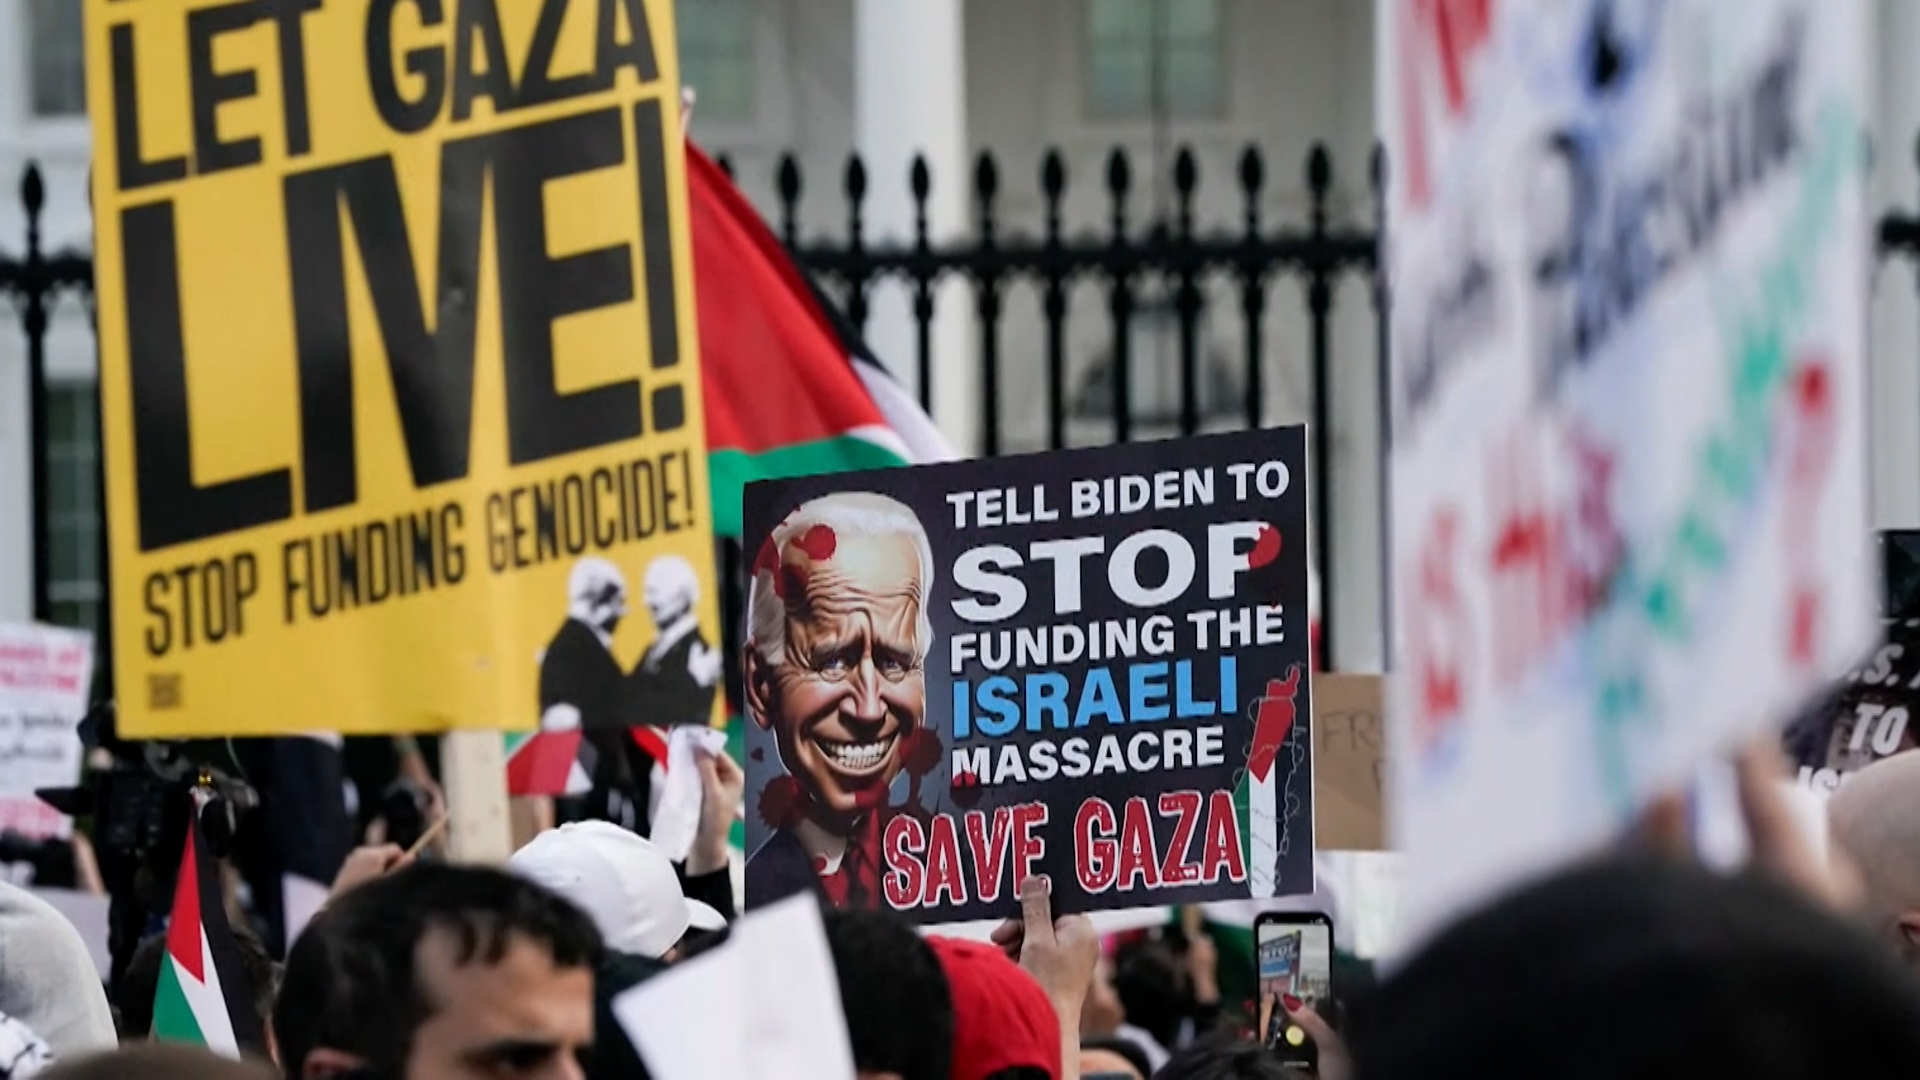 حرب غزة تتحول إلى كابوس إسرائيلي في الداخل والخارج